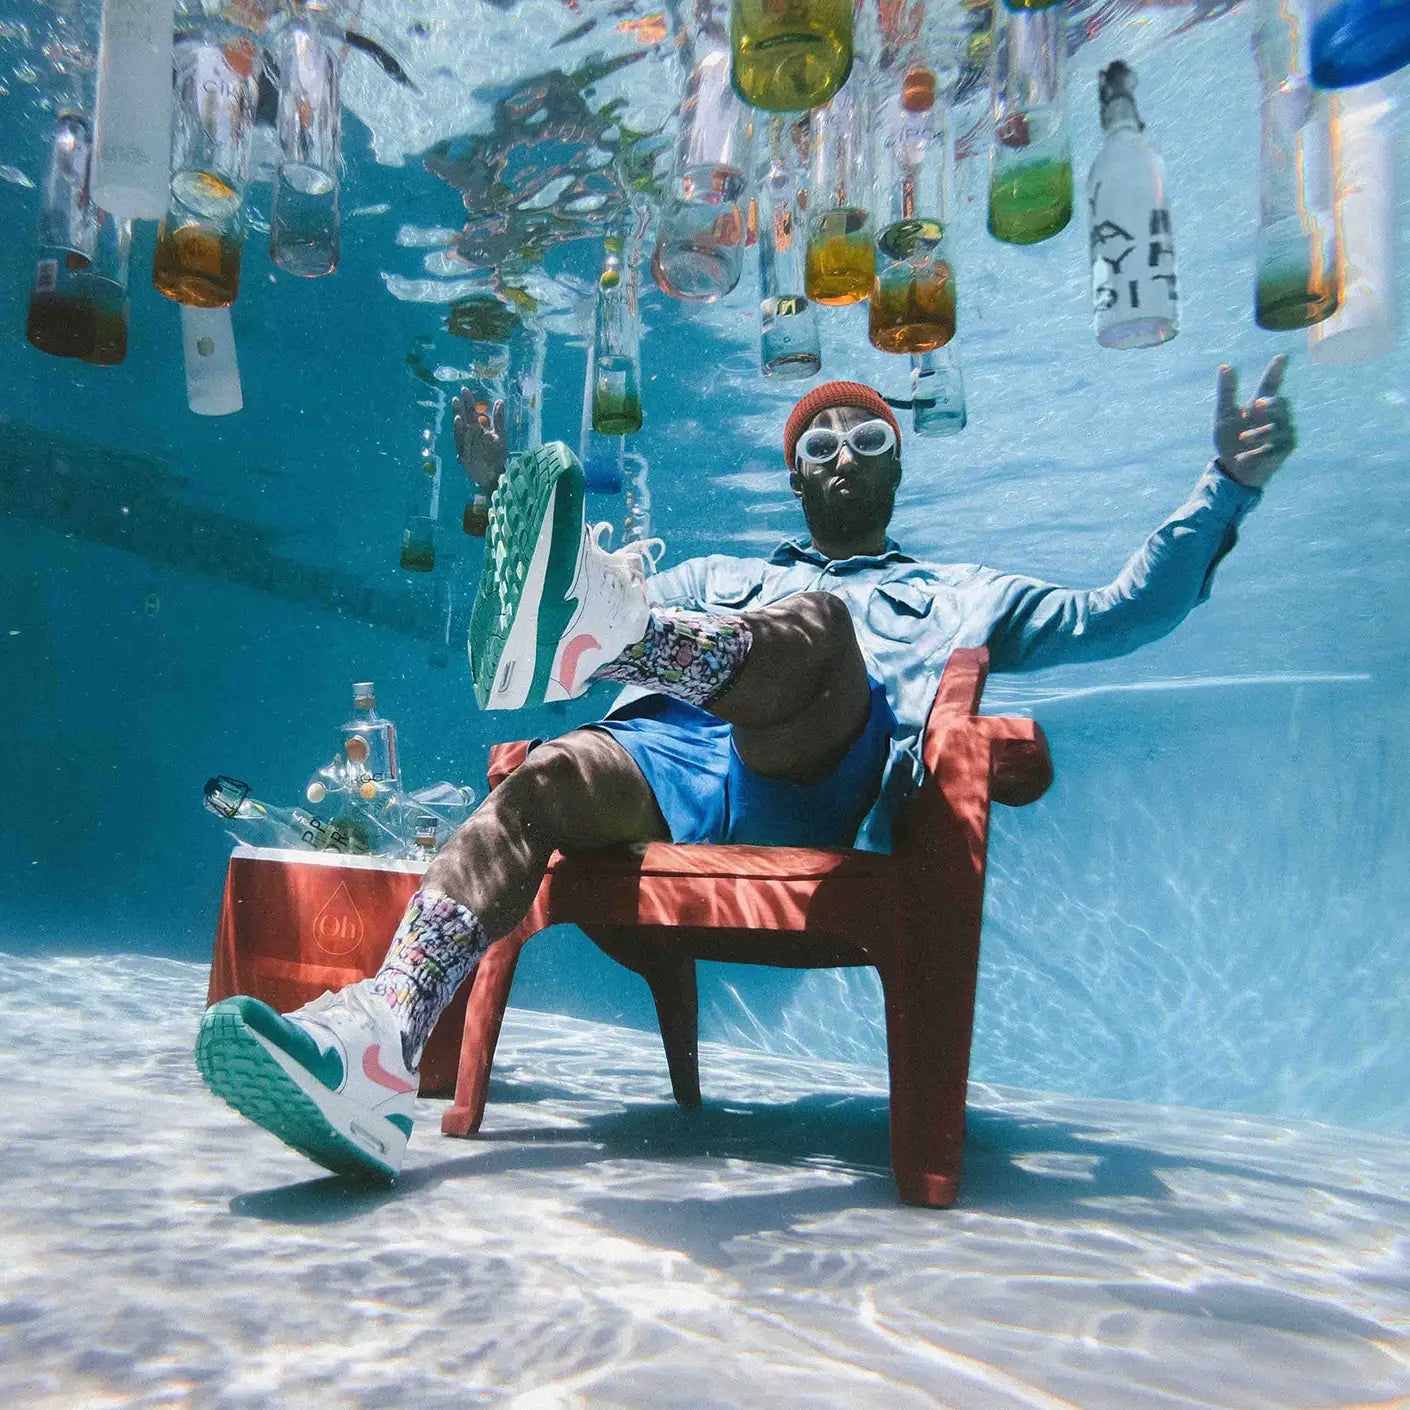 Mann sitzt unter Wasser im Pool, um ihn herum schwimmenden Wasserflaschen